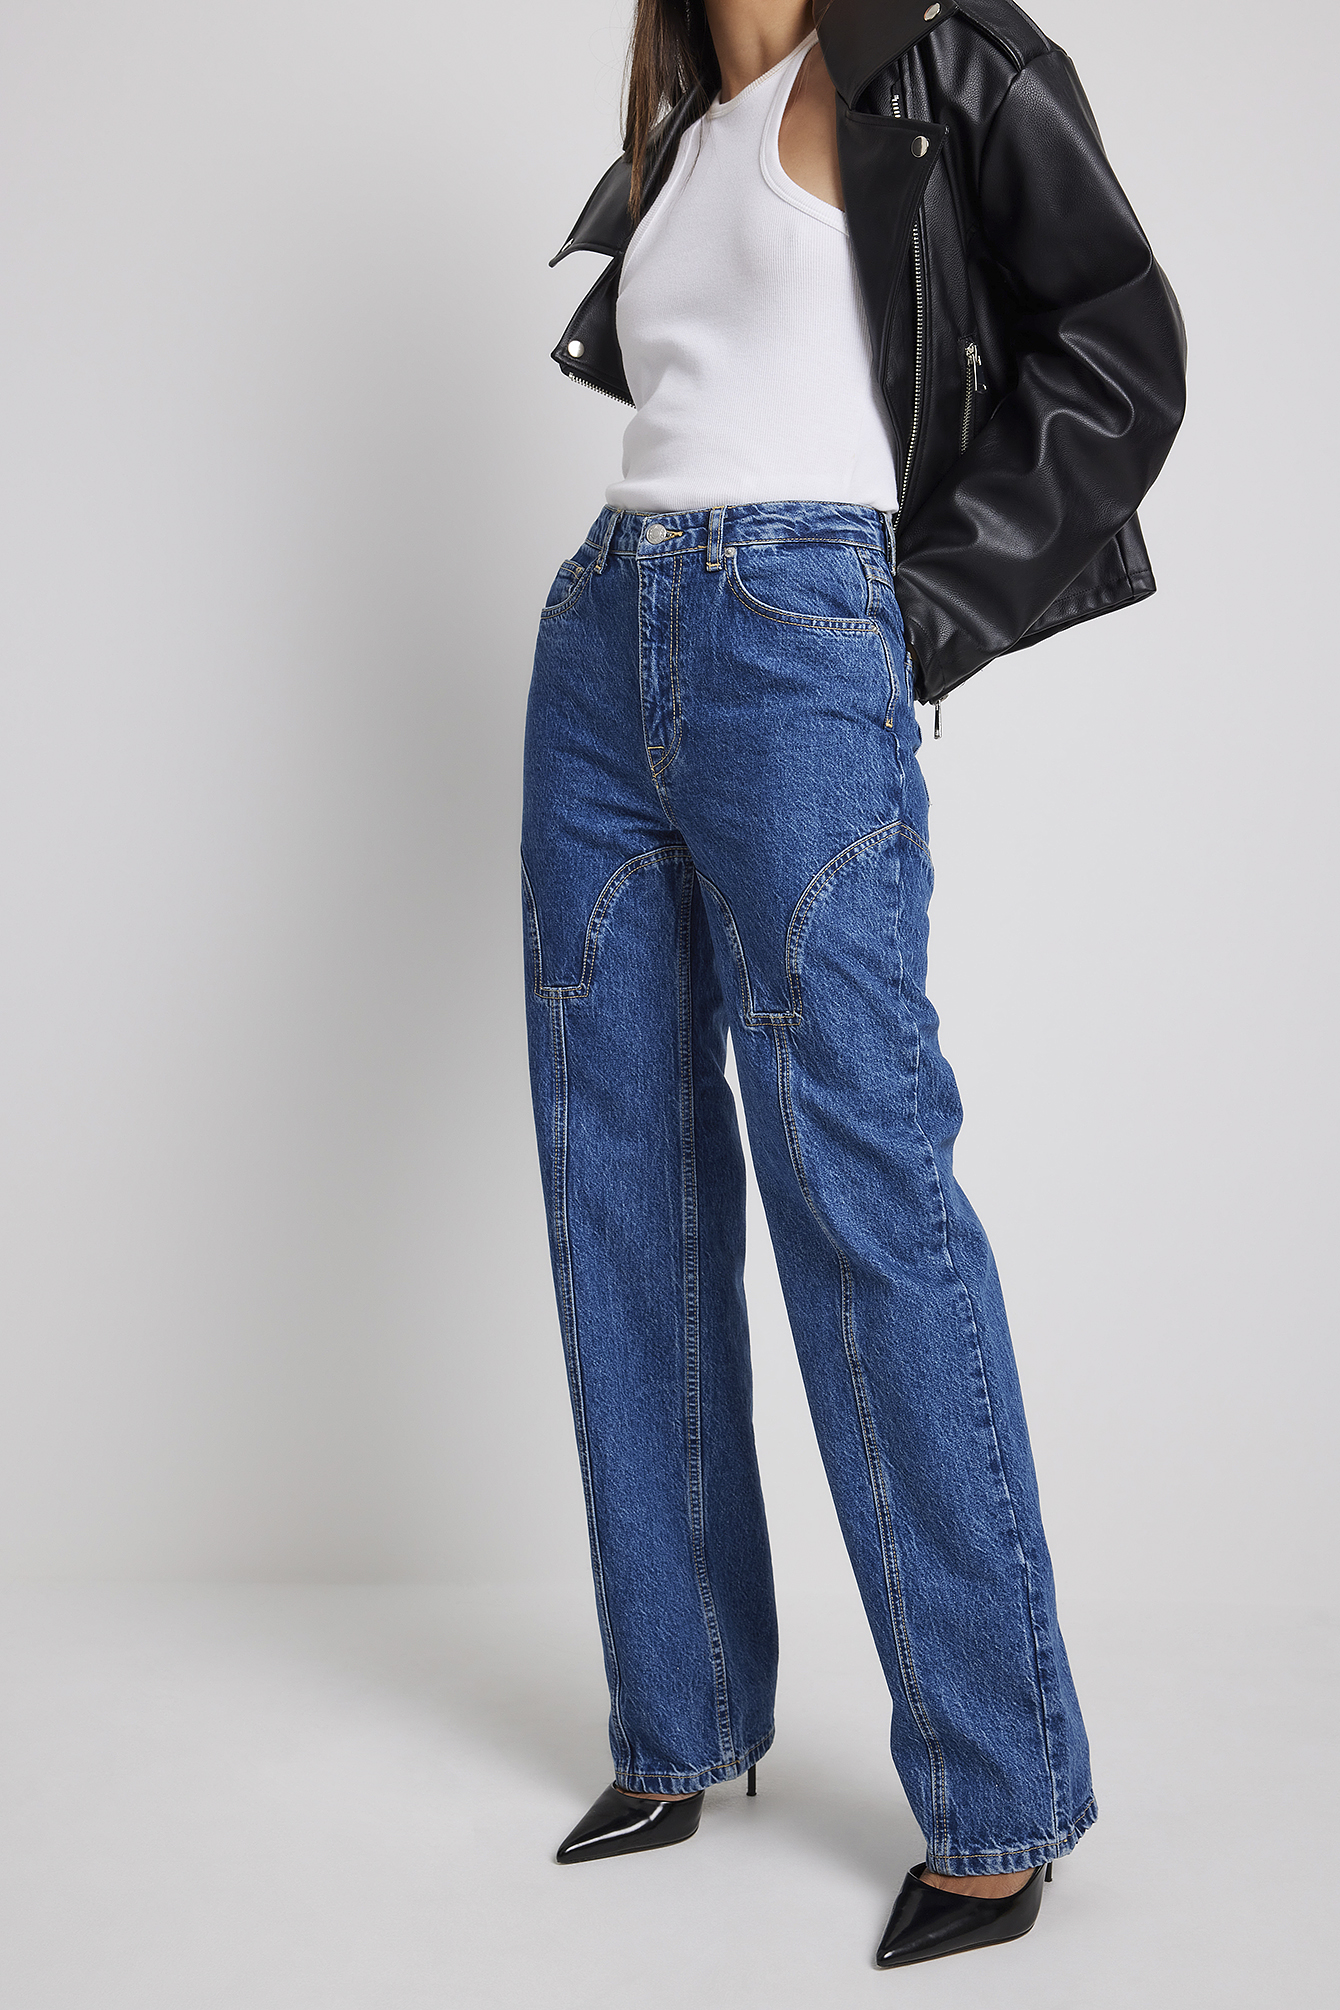 Damen Bekleidung Jeans Jeans mit gerader Passform Sparen Sie 1% NA-KD Synthetik Boho Sequin Detail Flowy Dress in Schwarz 